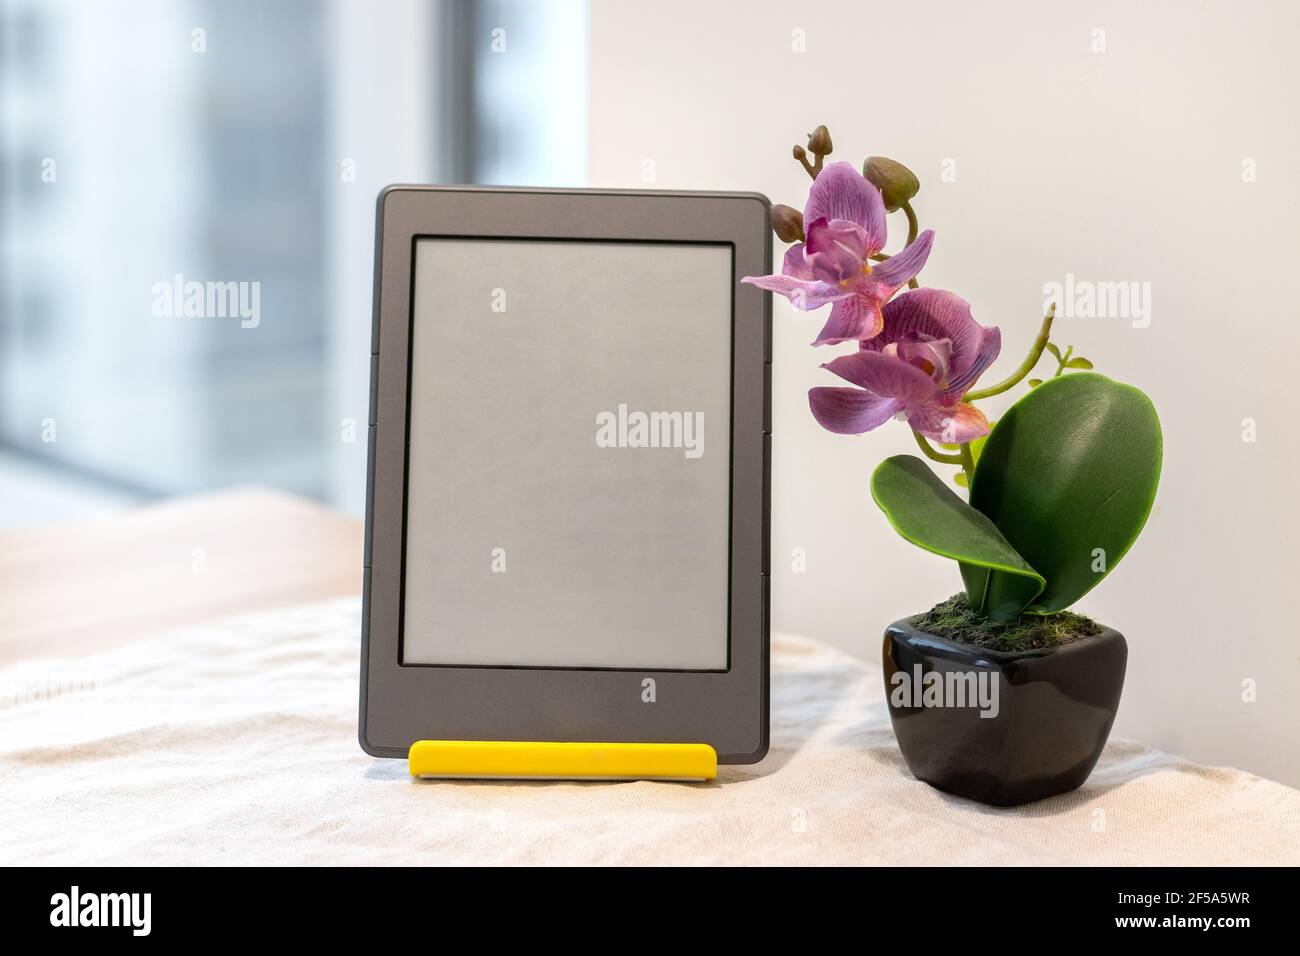 Modernes graues E-Reader elektronisches Buch mit leerem Bildschirm Ein gelber Ständer neben einer künstlichen rosa Orchidee Der Küchentisch Stockfoto